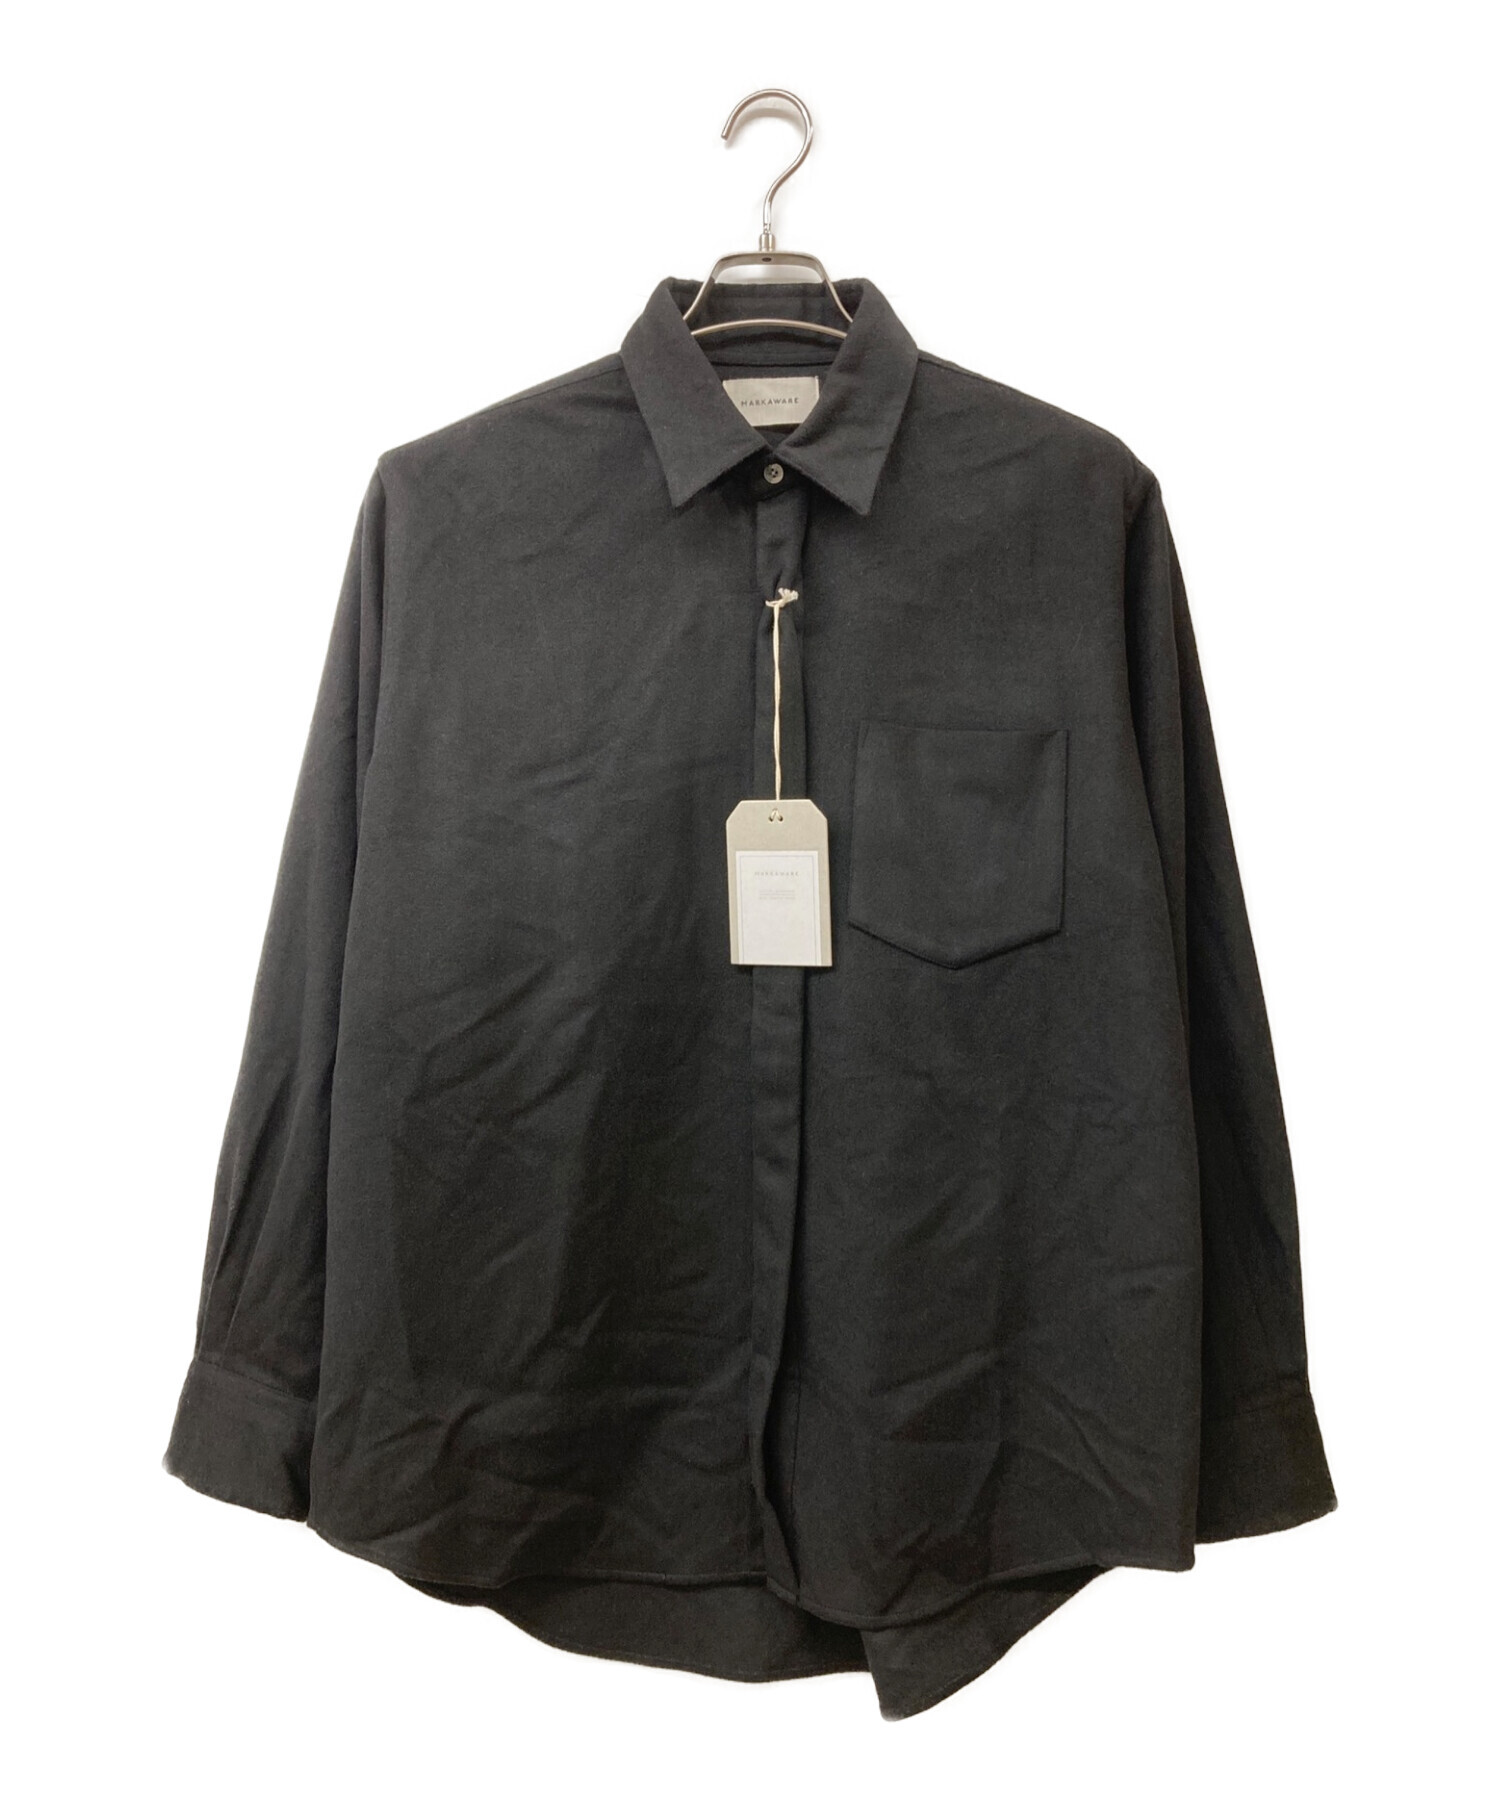 MARKAWARE (マーカウェア) CASHMERE FLY FRONT SHIRT カシミヤシャツ ブラック サイズ:2 未使用品